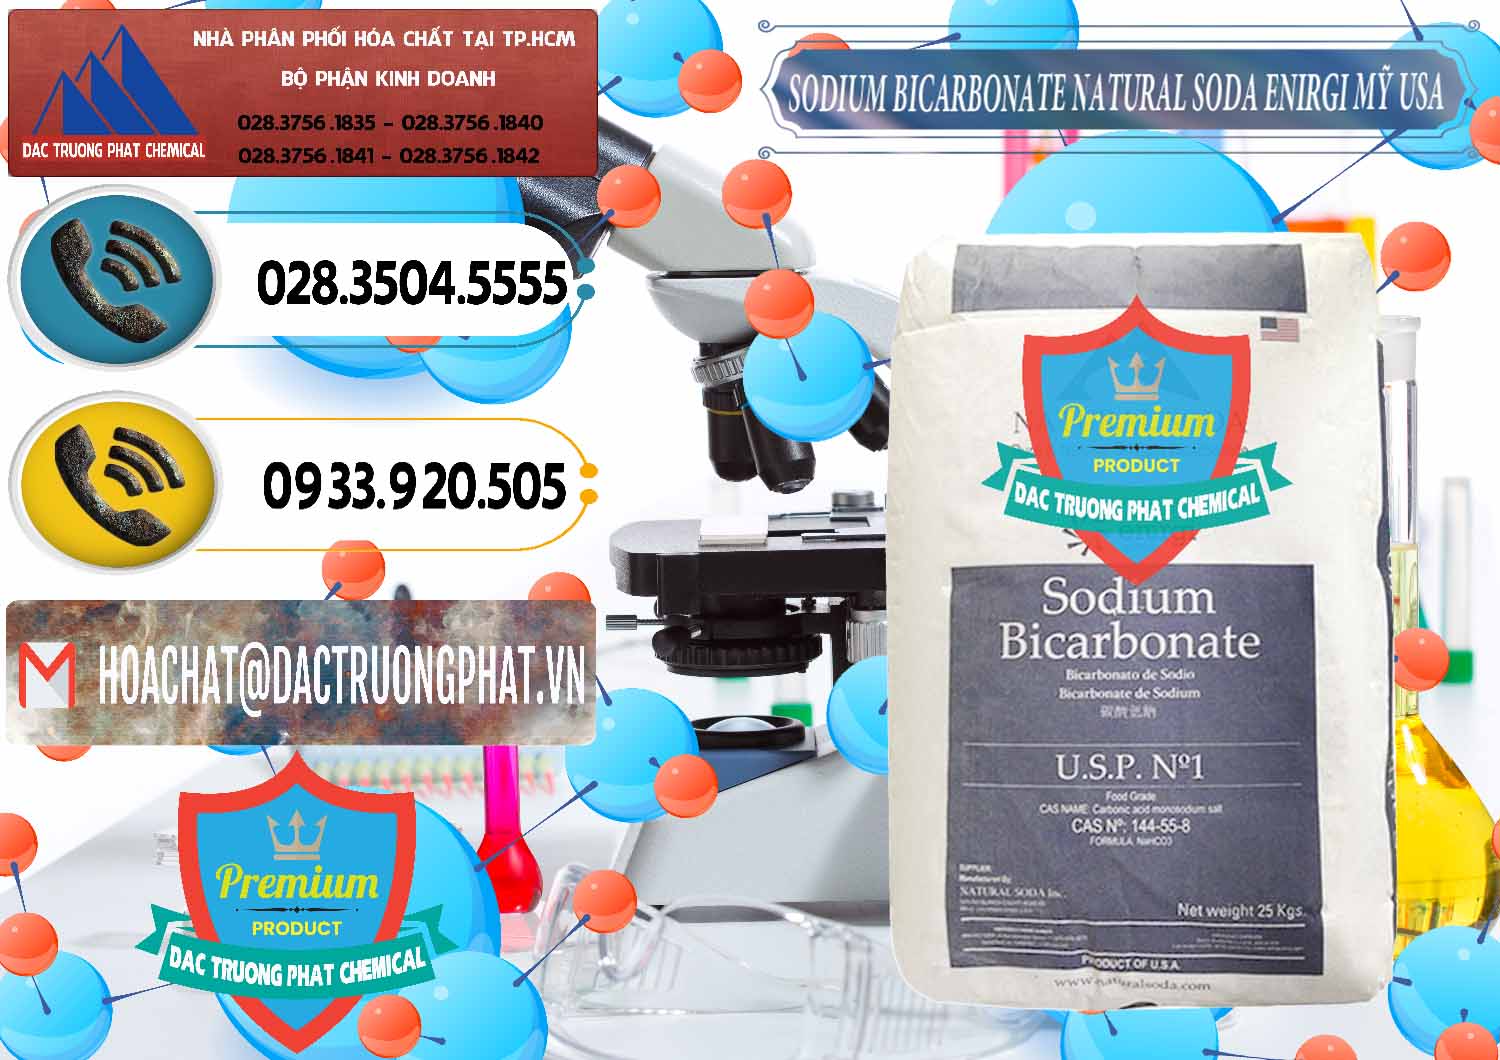 Bán và cung cấp Sodium Bicarbonate – Bicar NaHCO3 Food Grade Natural Soda Enirgi Mỹ USA - 0257 - Nơi bán và phân phối hóa chất tại TP.HCM - hoachatdetnhuom.vn